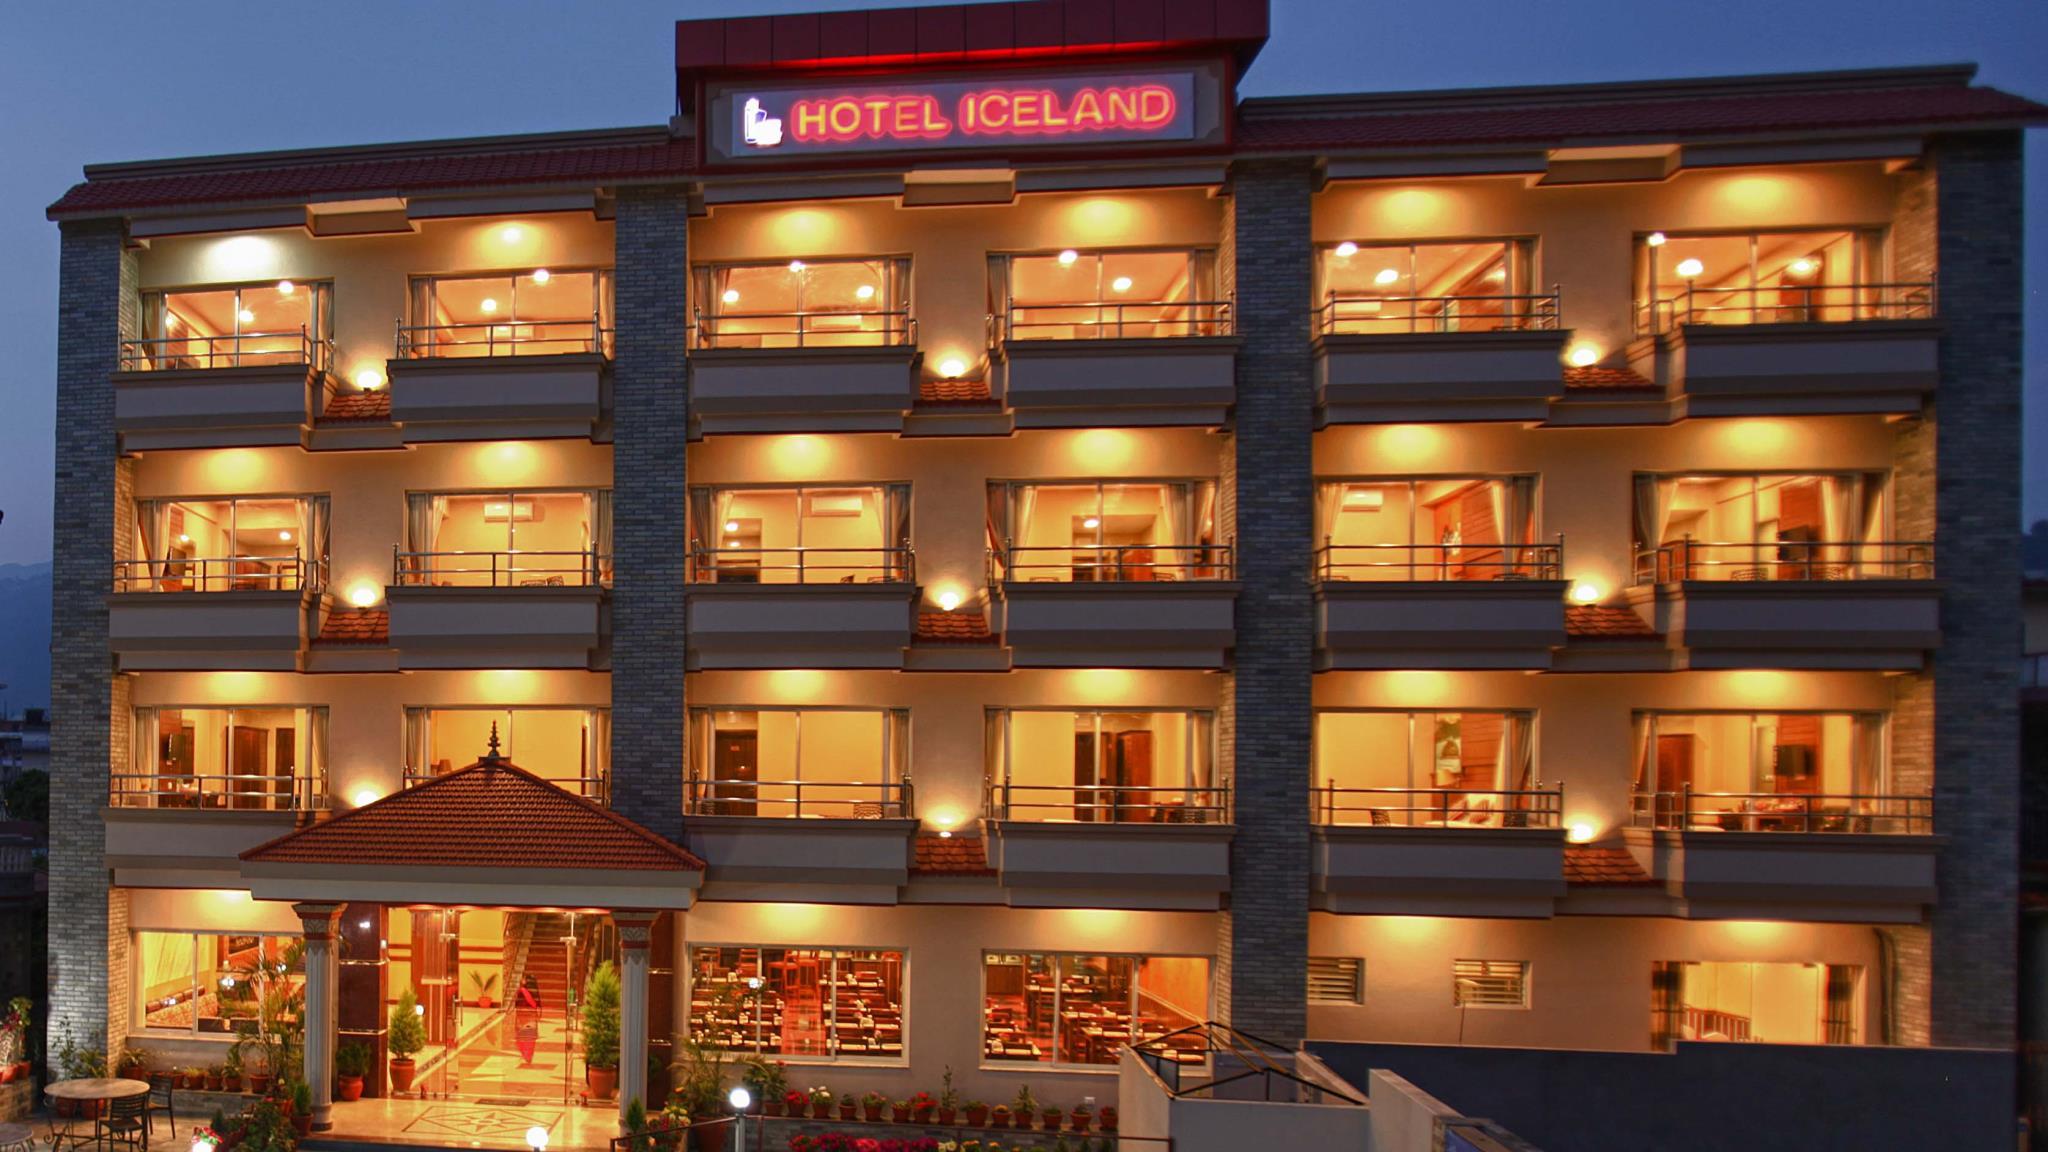 Hotel Iceland Pokhara image 1